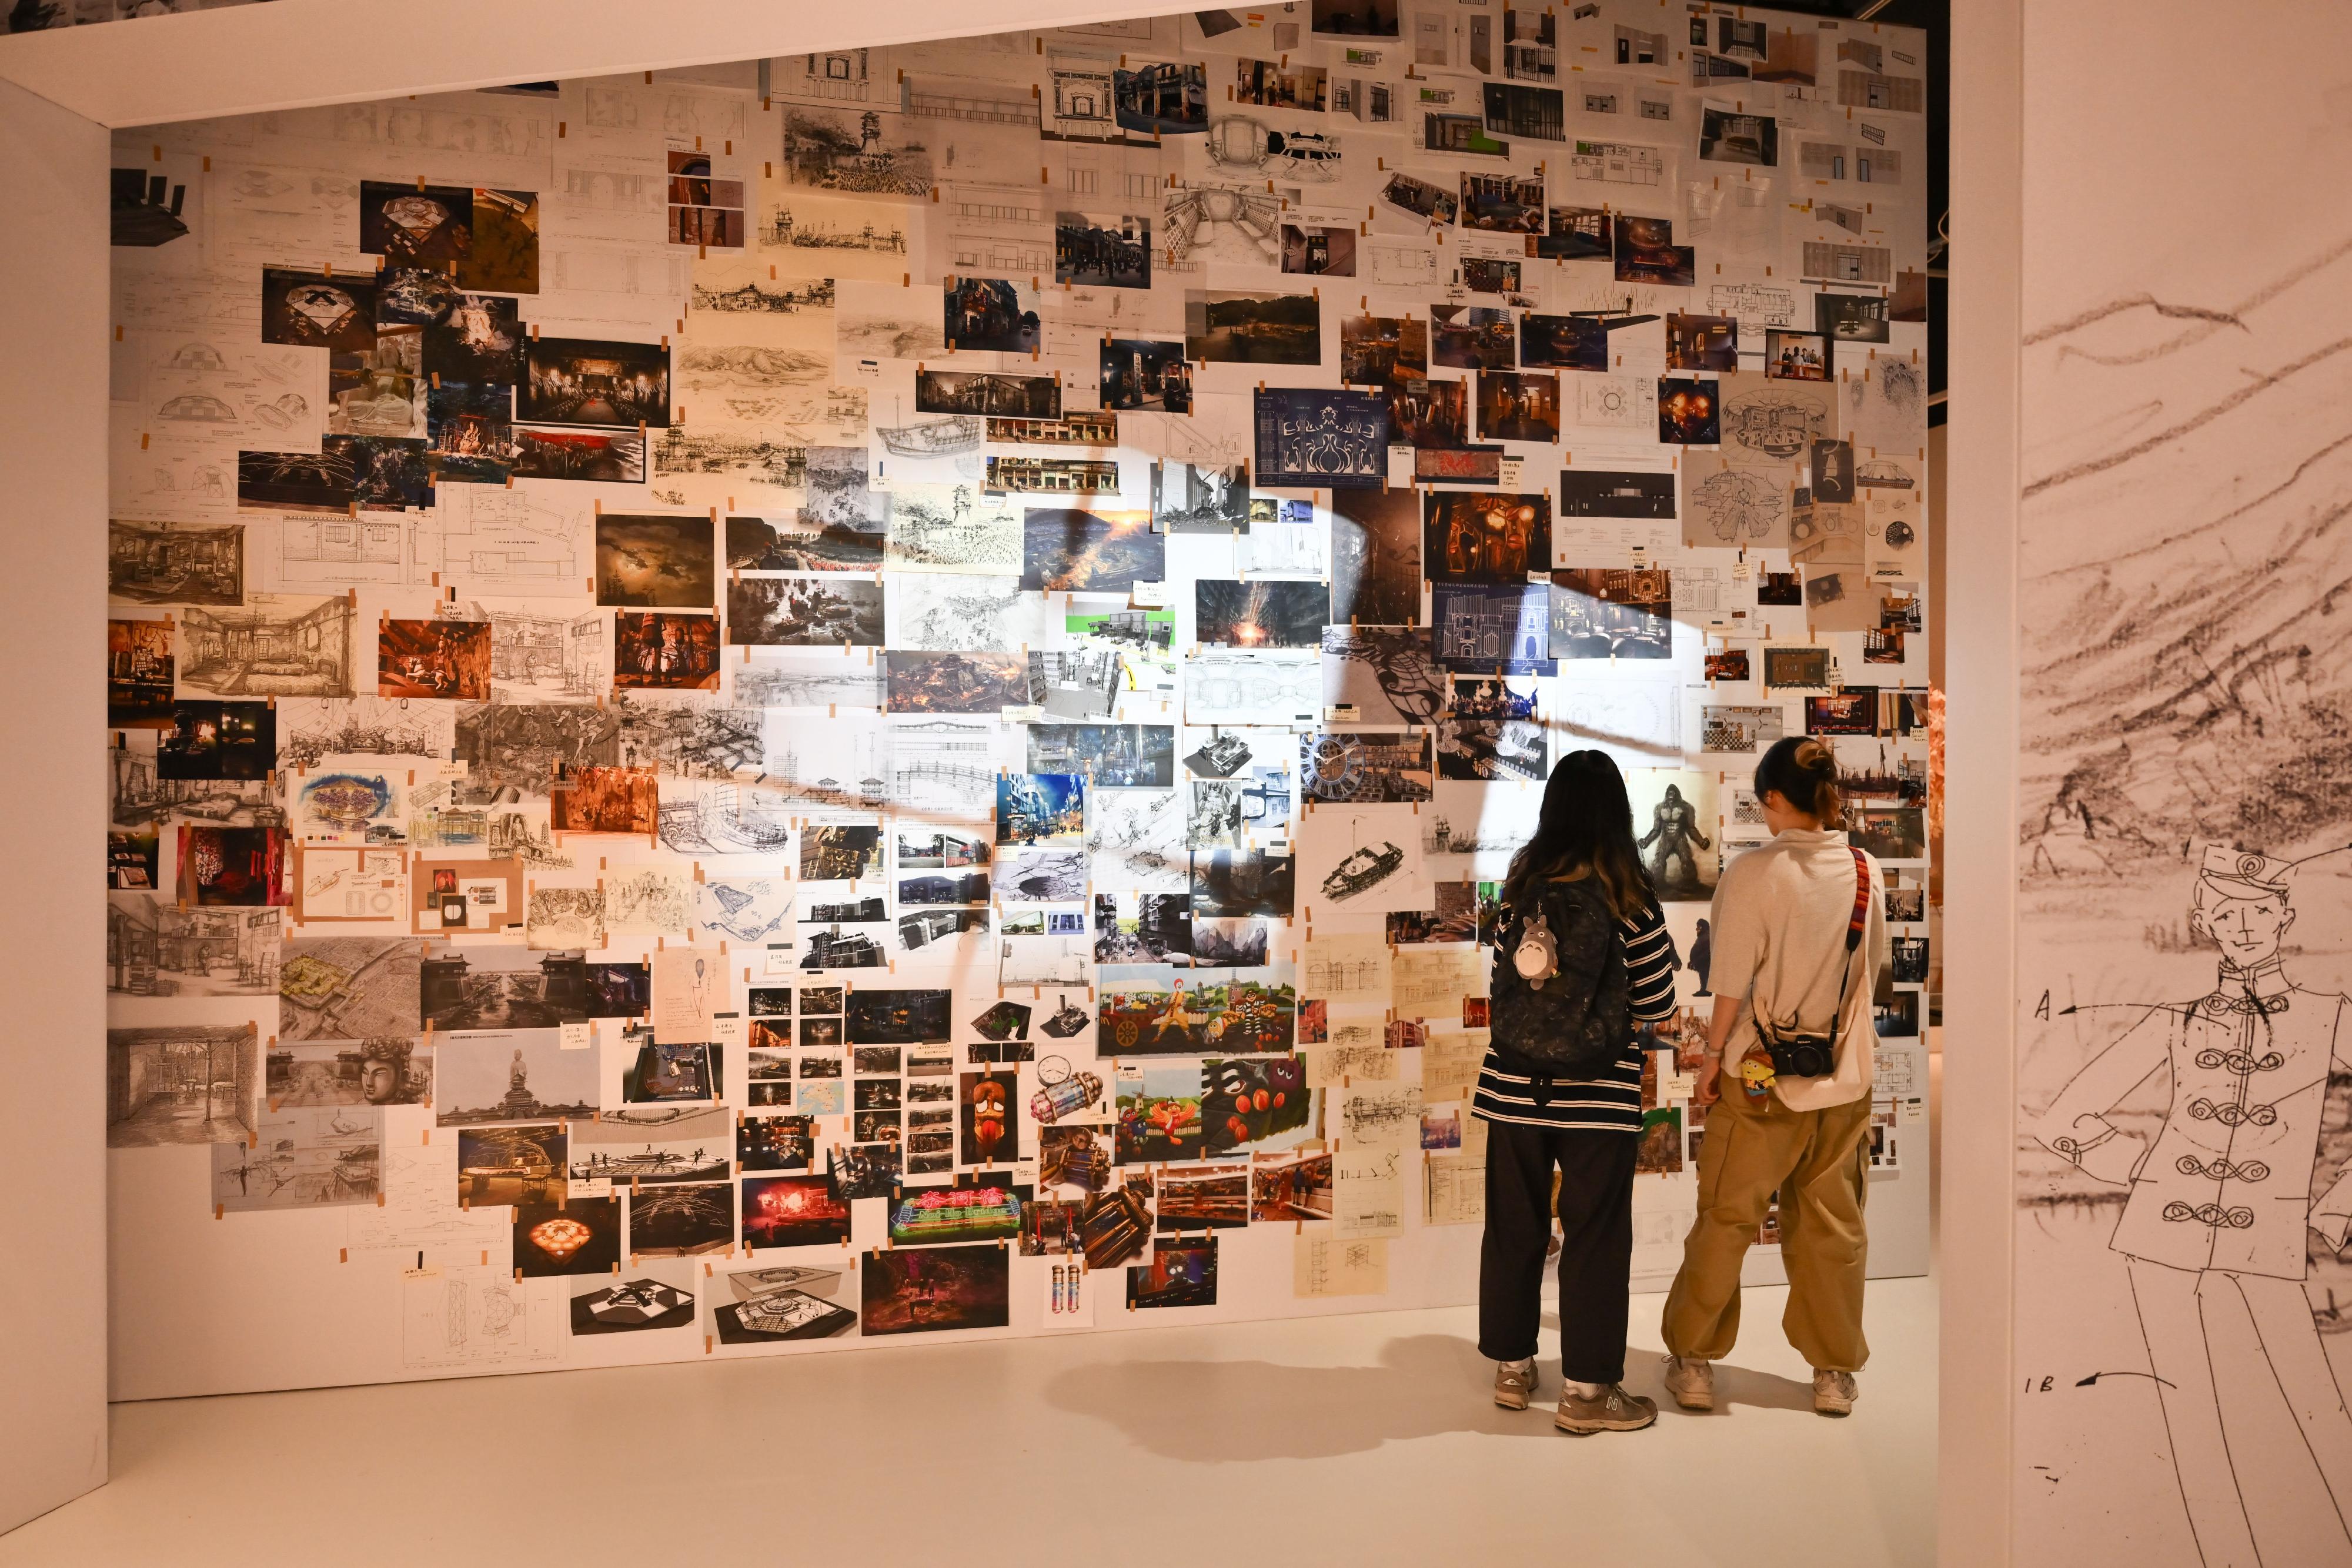 现正于香港文化博物馆举行的「无中生有——香港电影美术及服装造型展」将于九月四日 （星期一）结束，市民请把握机会在余下展期前往参观。图示市民参观展览。